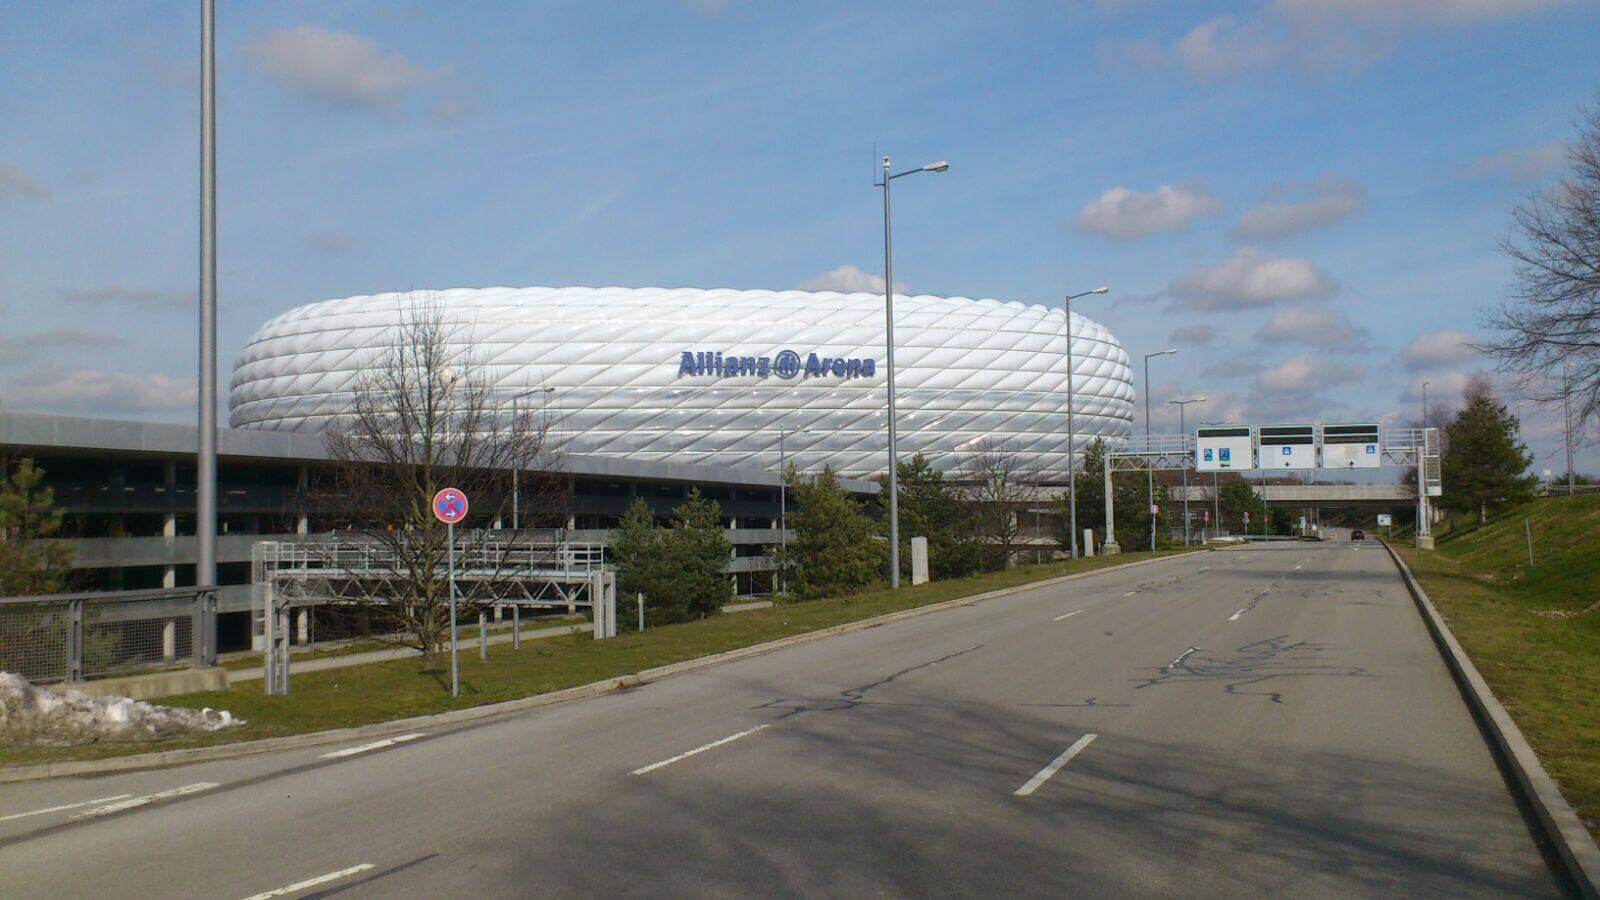 Dachdecker München Clauss Bedachungen Allianz Arena